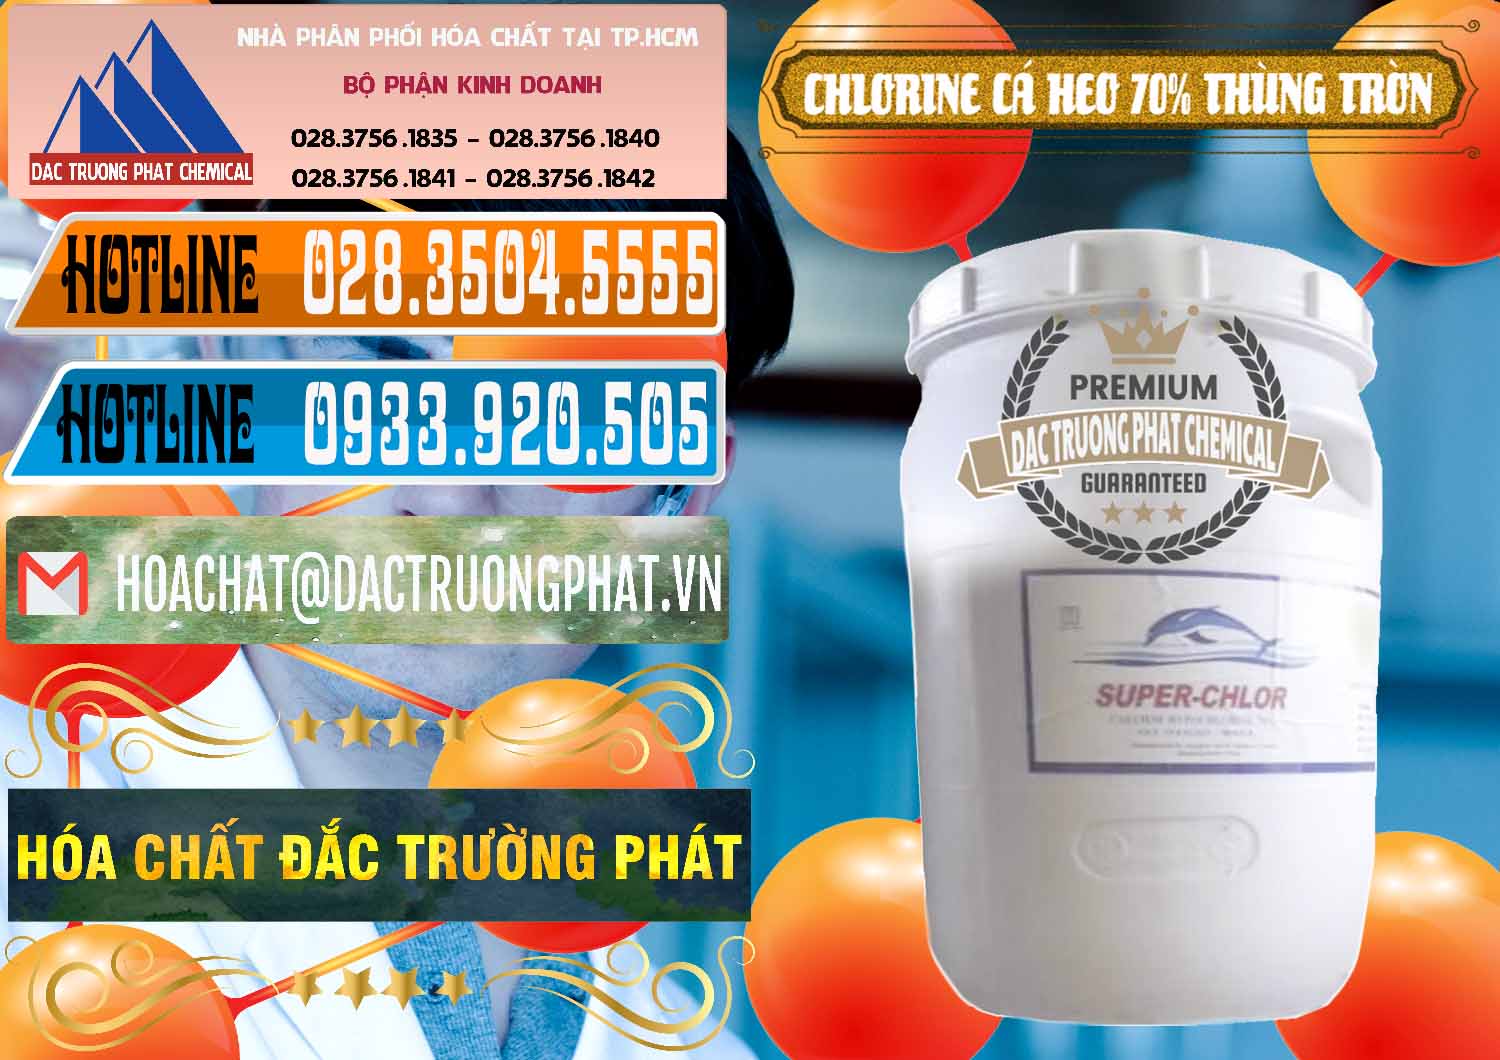 Chuyên bán _ phân phối Clorin - Chlorine Cá Heo 70% Super Chlor Thùng Tròn Nắp Trắng Trung Quốc China - 0239 - Cty chuyên bán - phân phối hóa chất tại TP.HCM - stmp.net